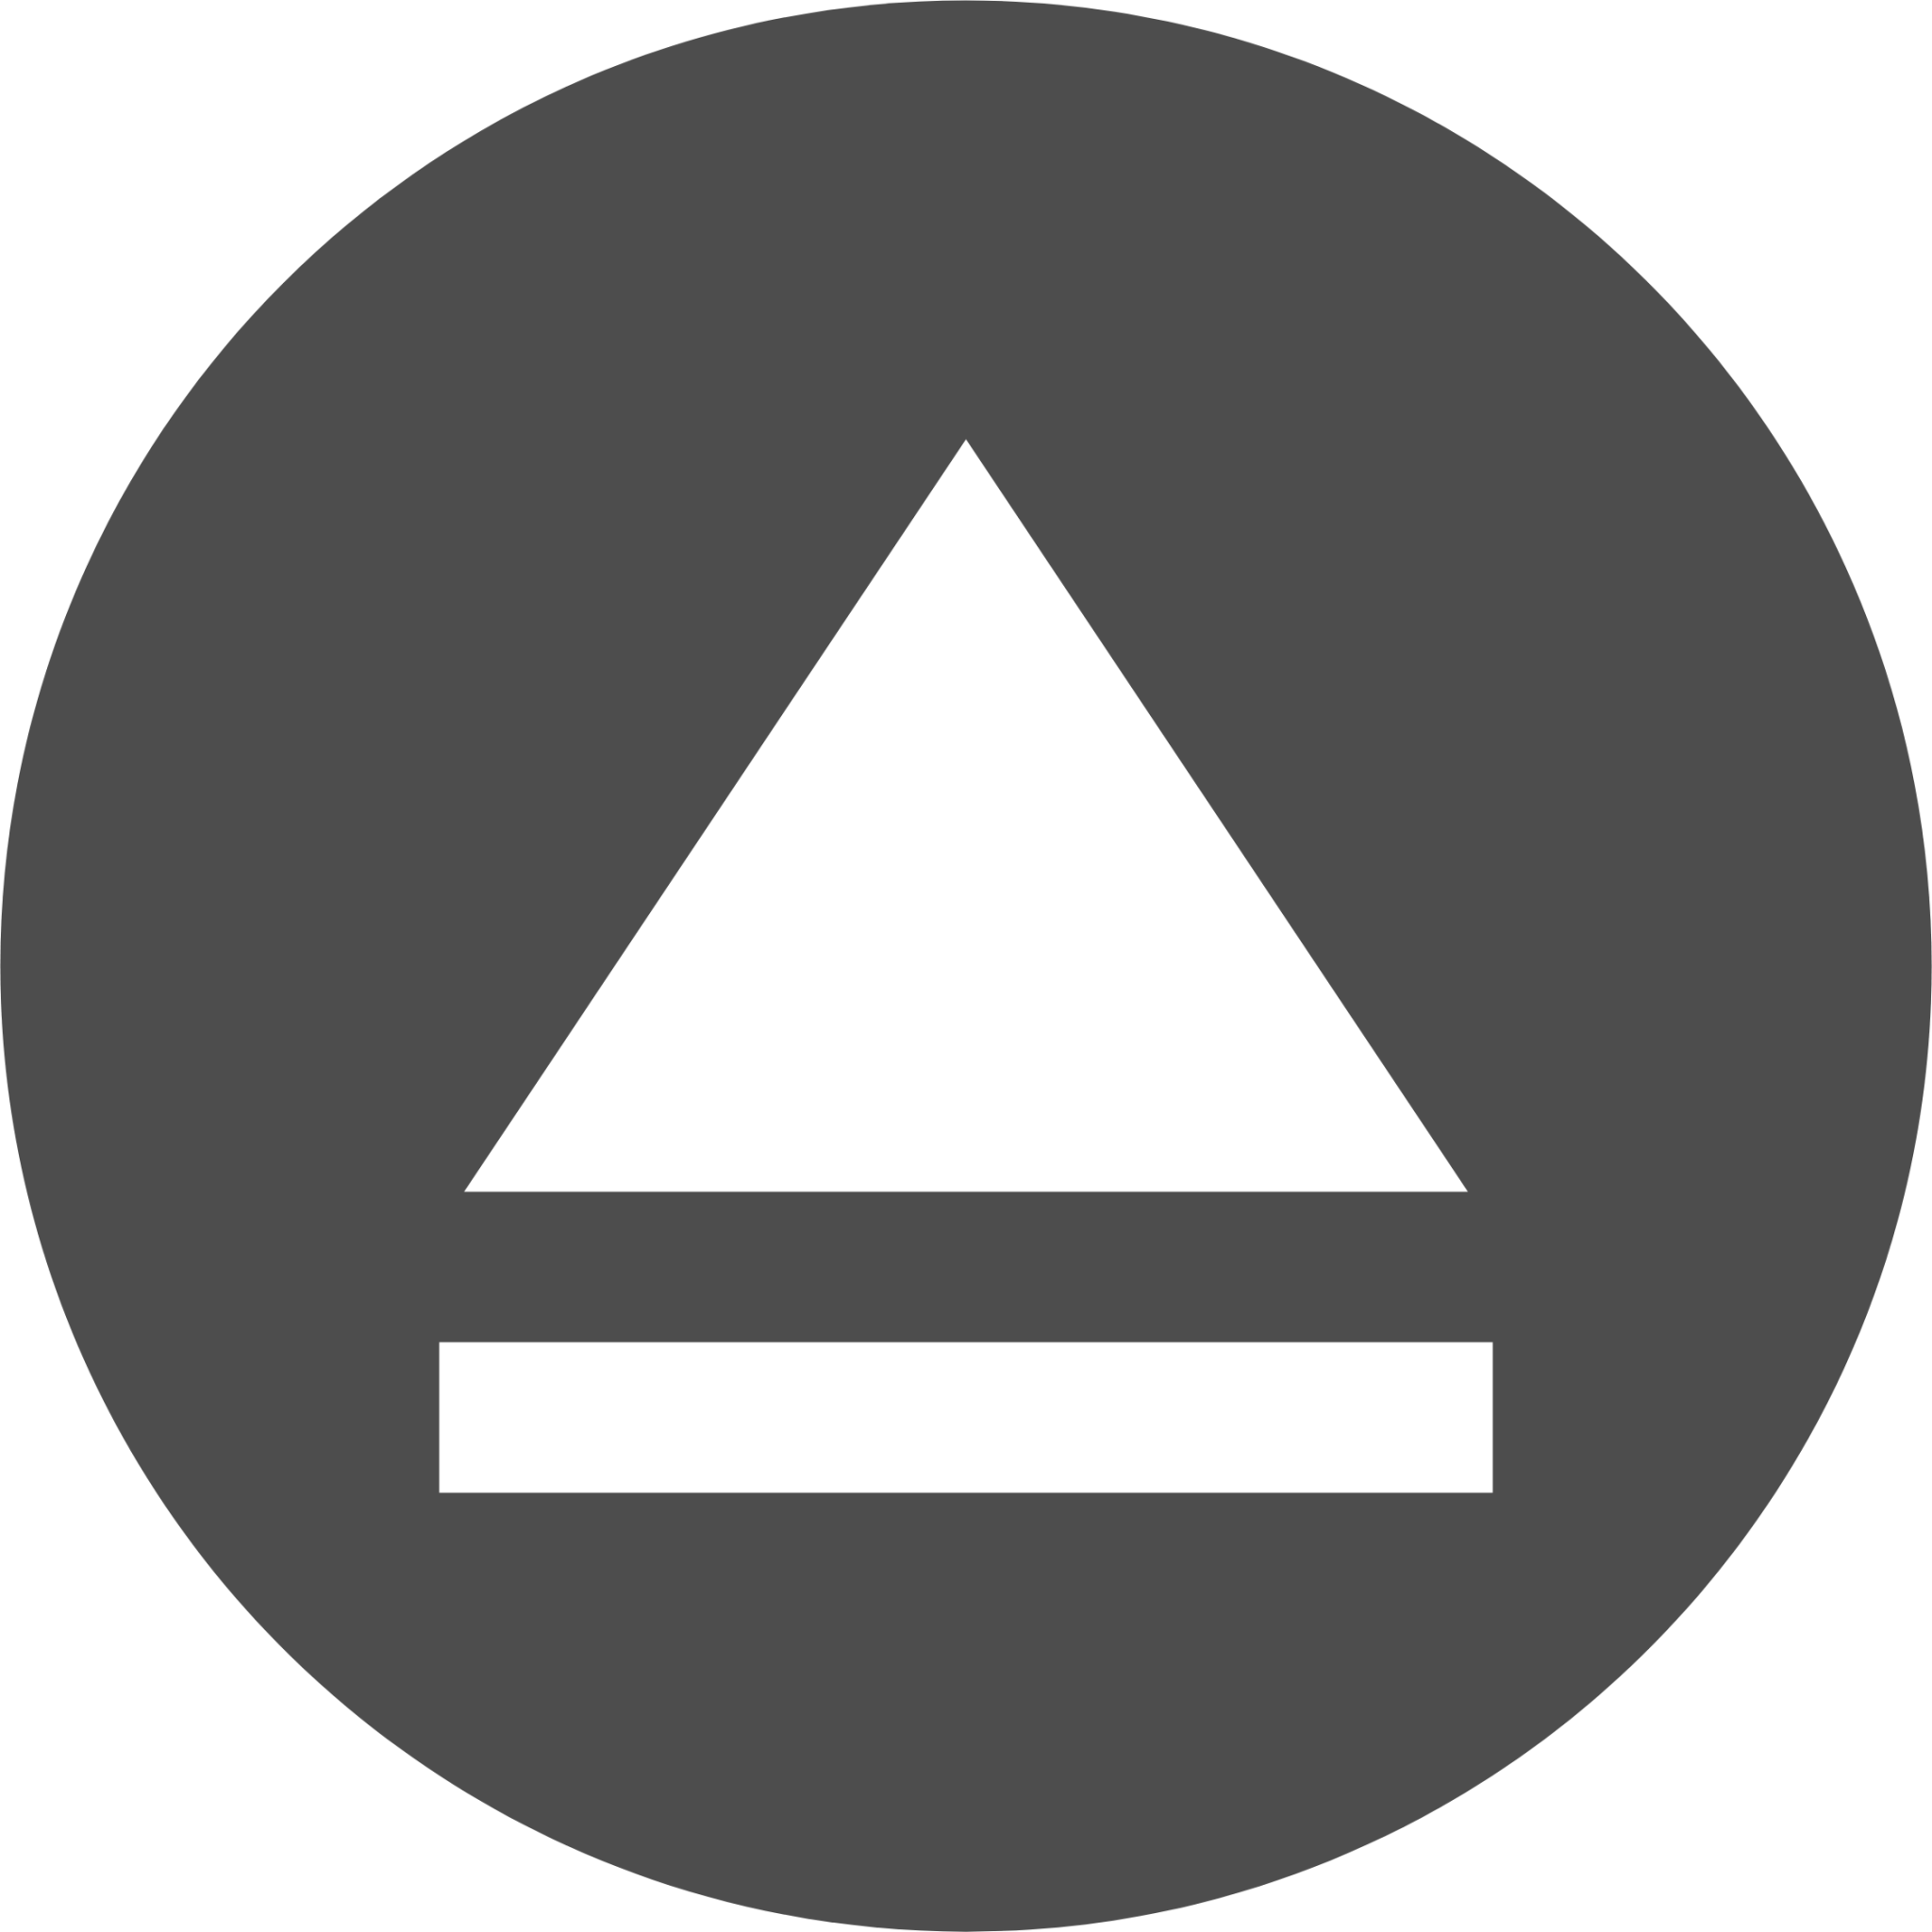 emblem mounted icon